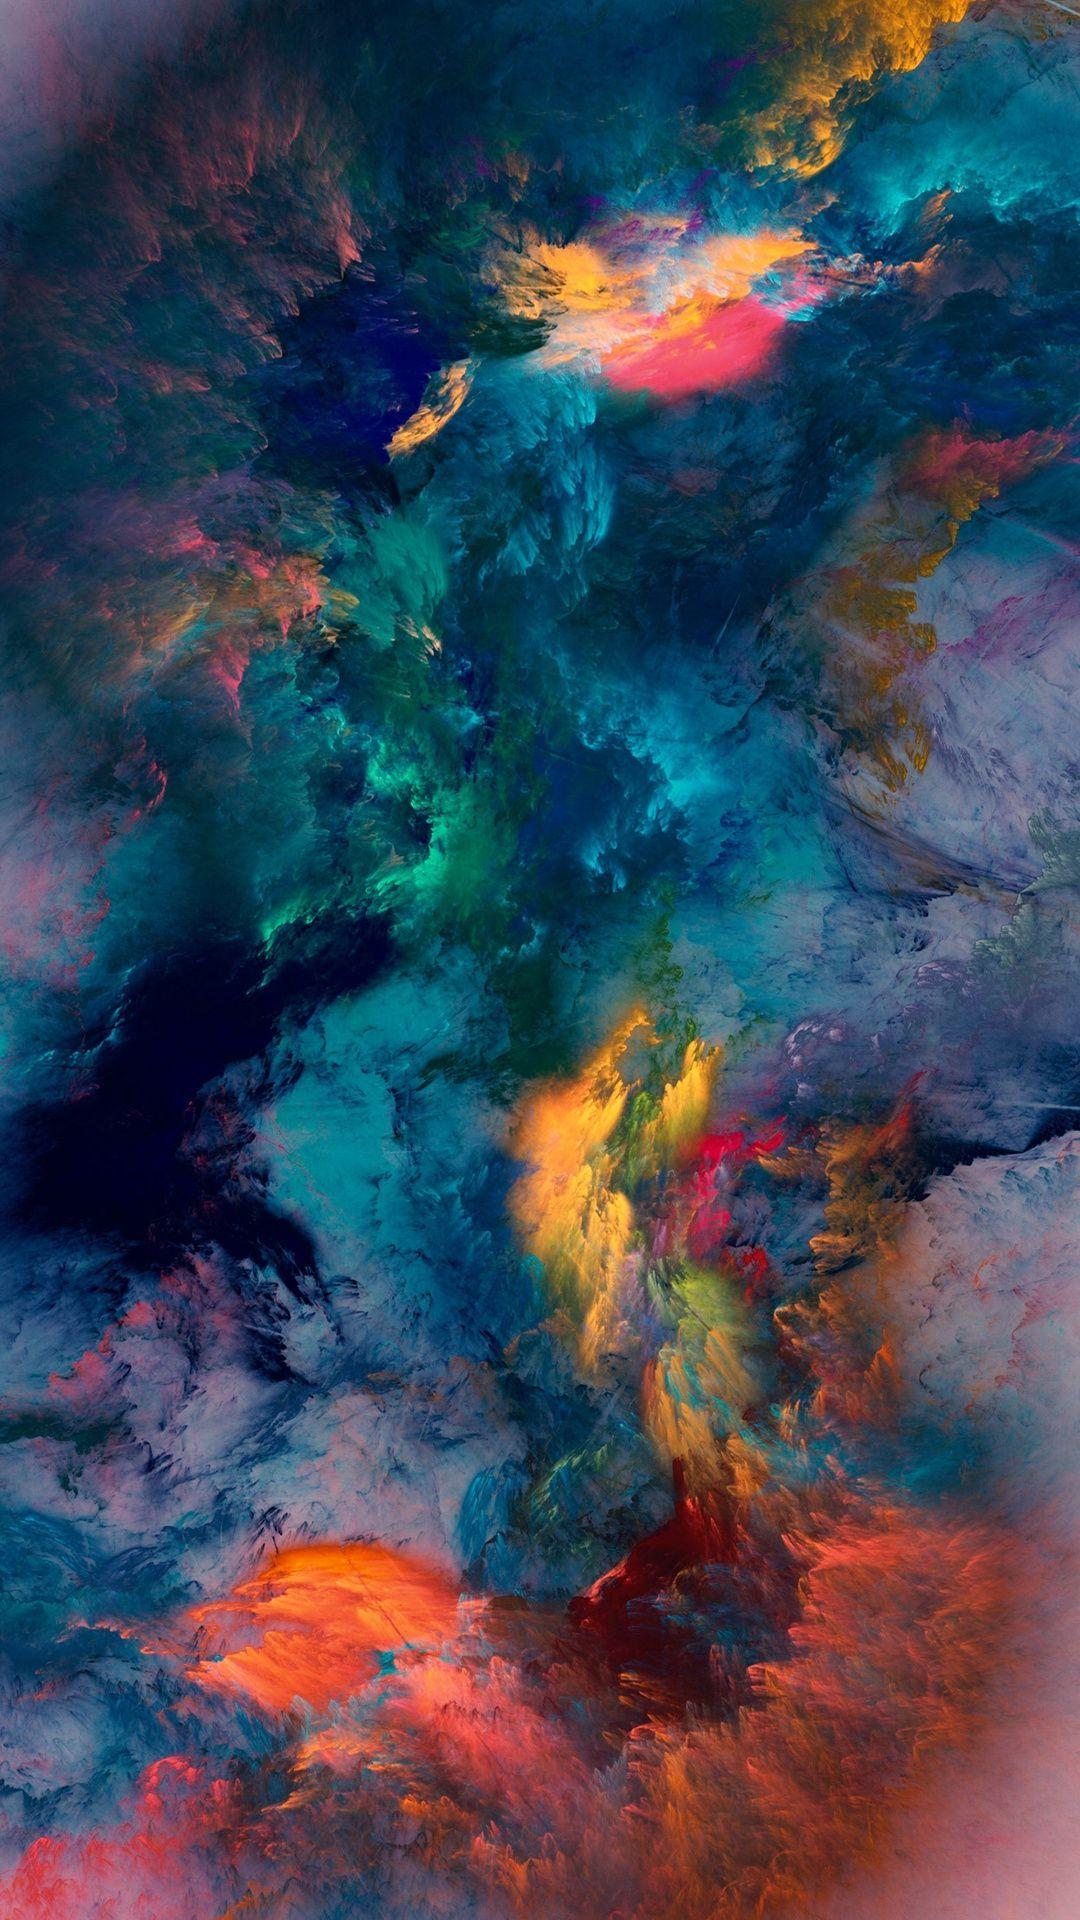 Colour Storm Wallpaper. Digital art. iPhone wallpaper